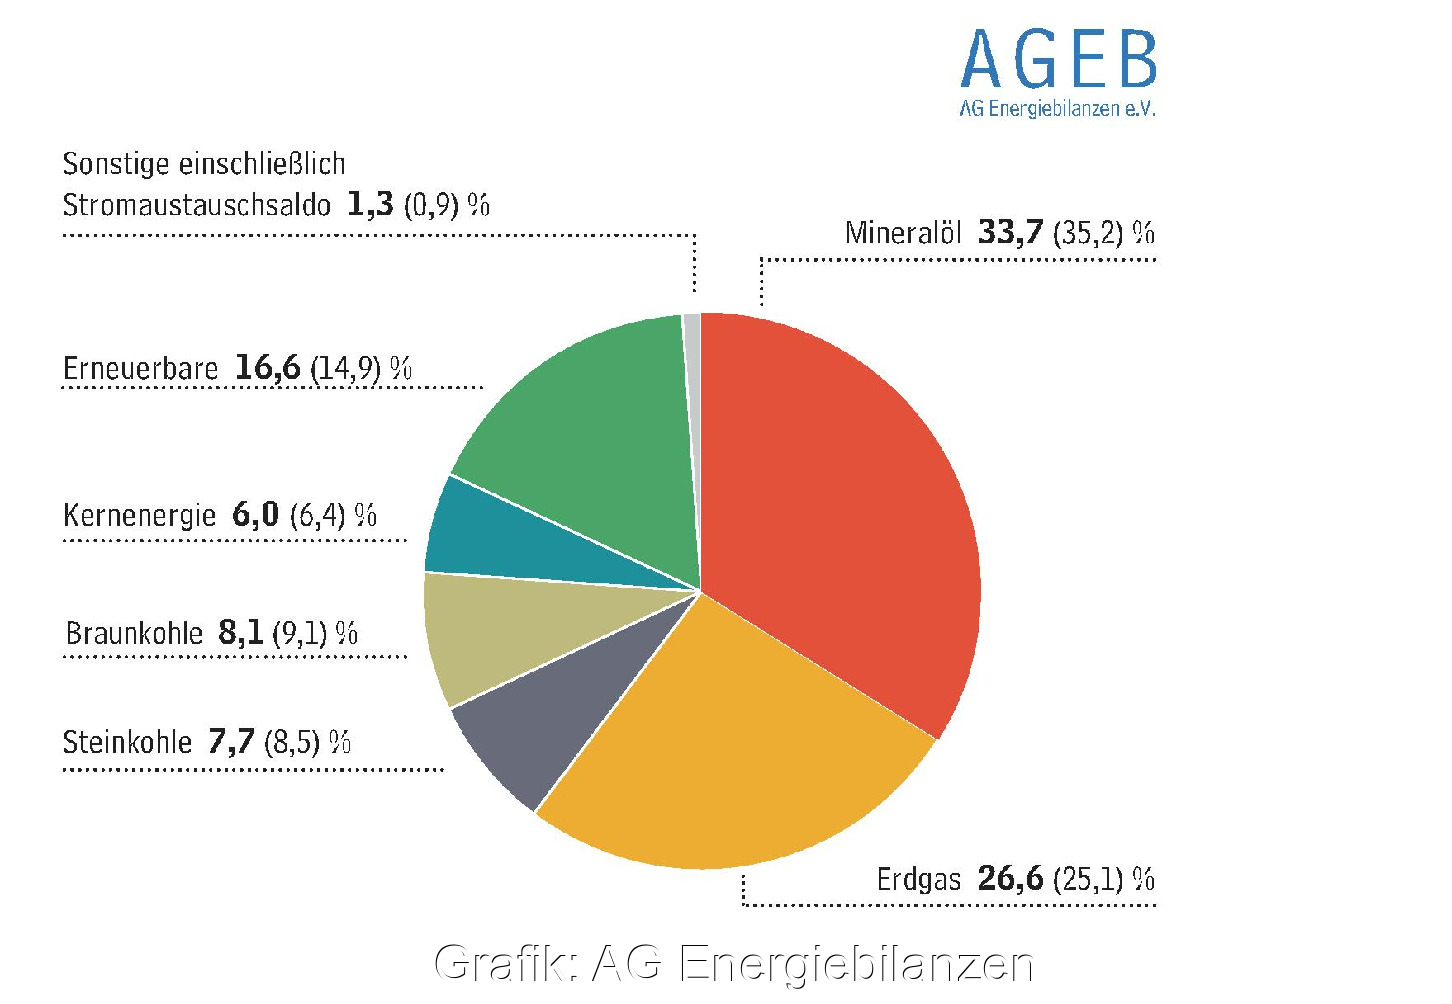 Zu sehen ist ein Tortendiagramm, das die Anteile der Energieträger zum Primärenergieverbrauch in Deutschland 2020 zeigt.